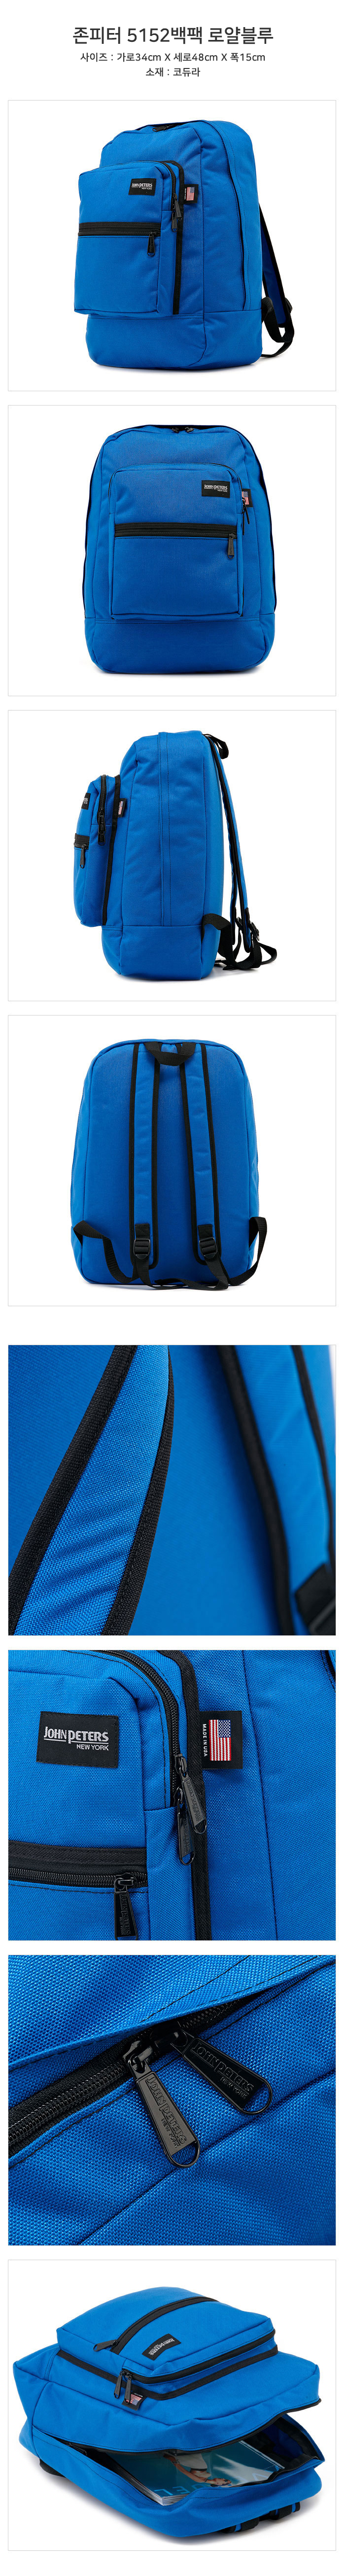 5152 Laptop Backpack Royal Blue